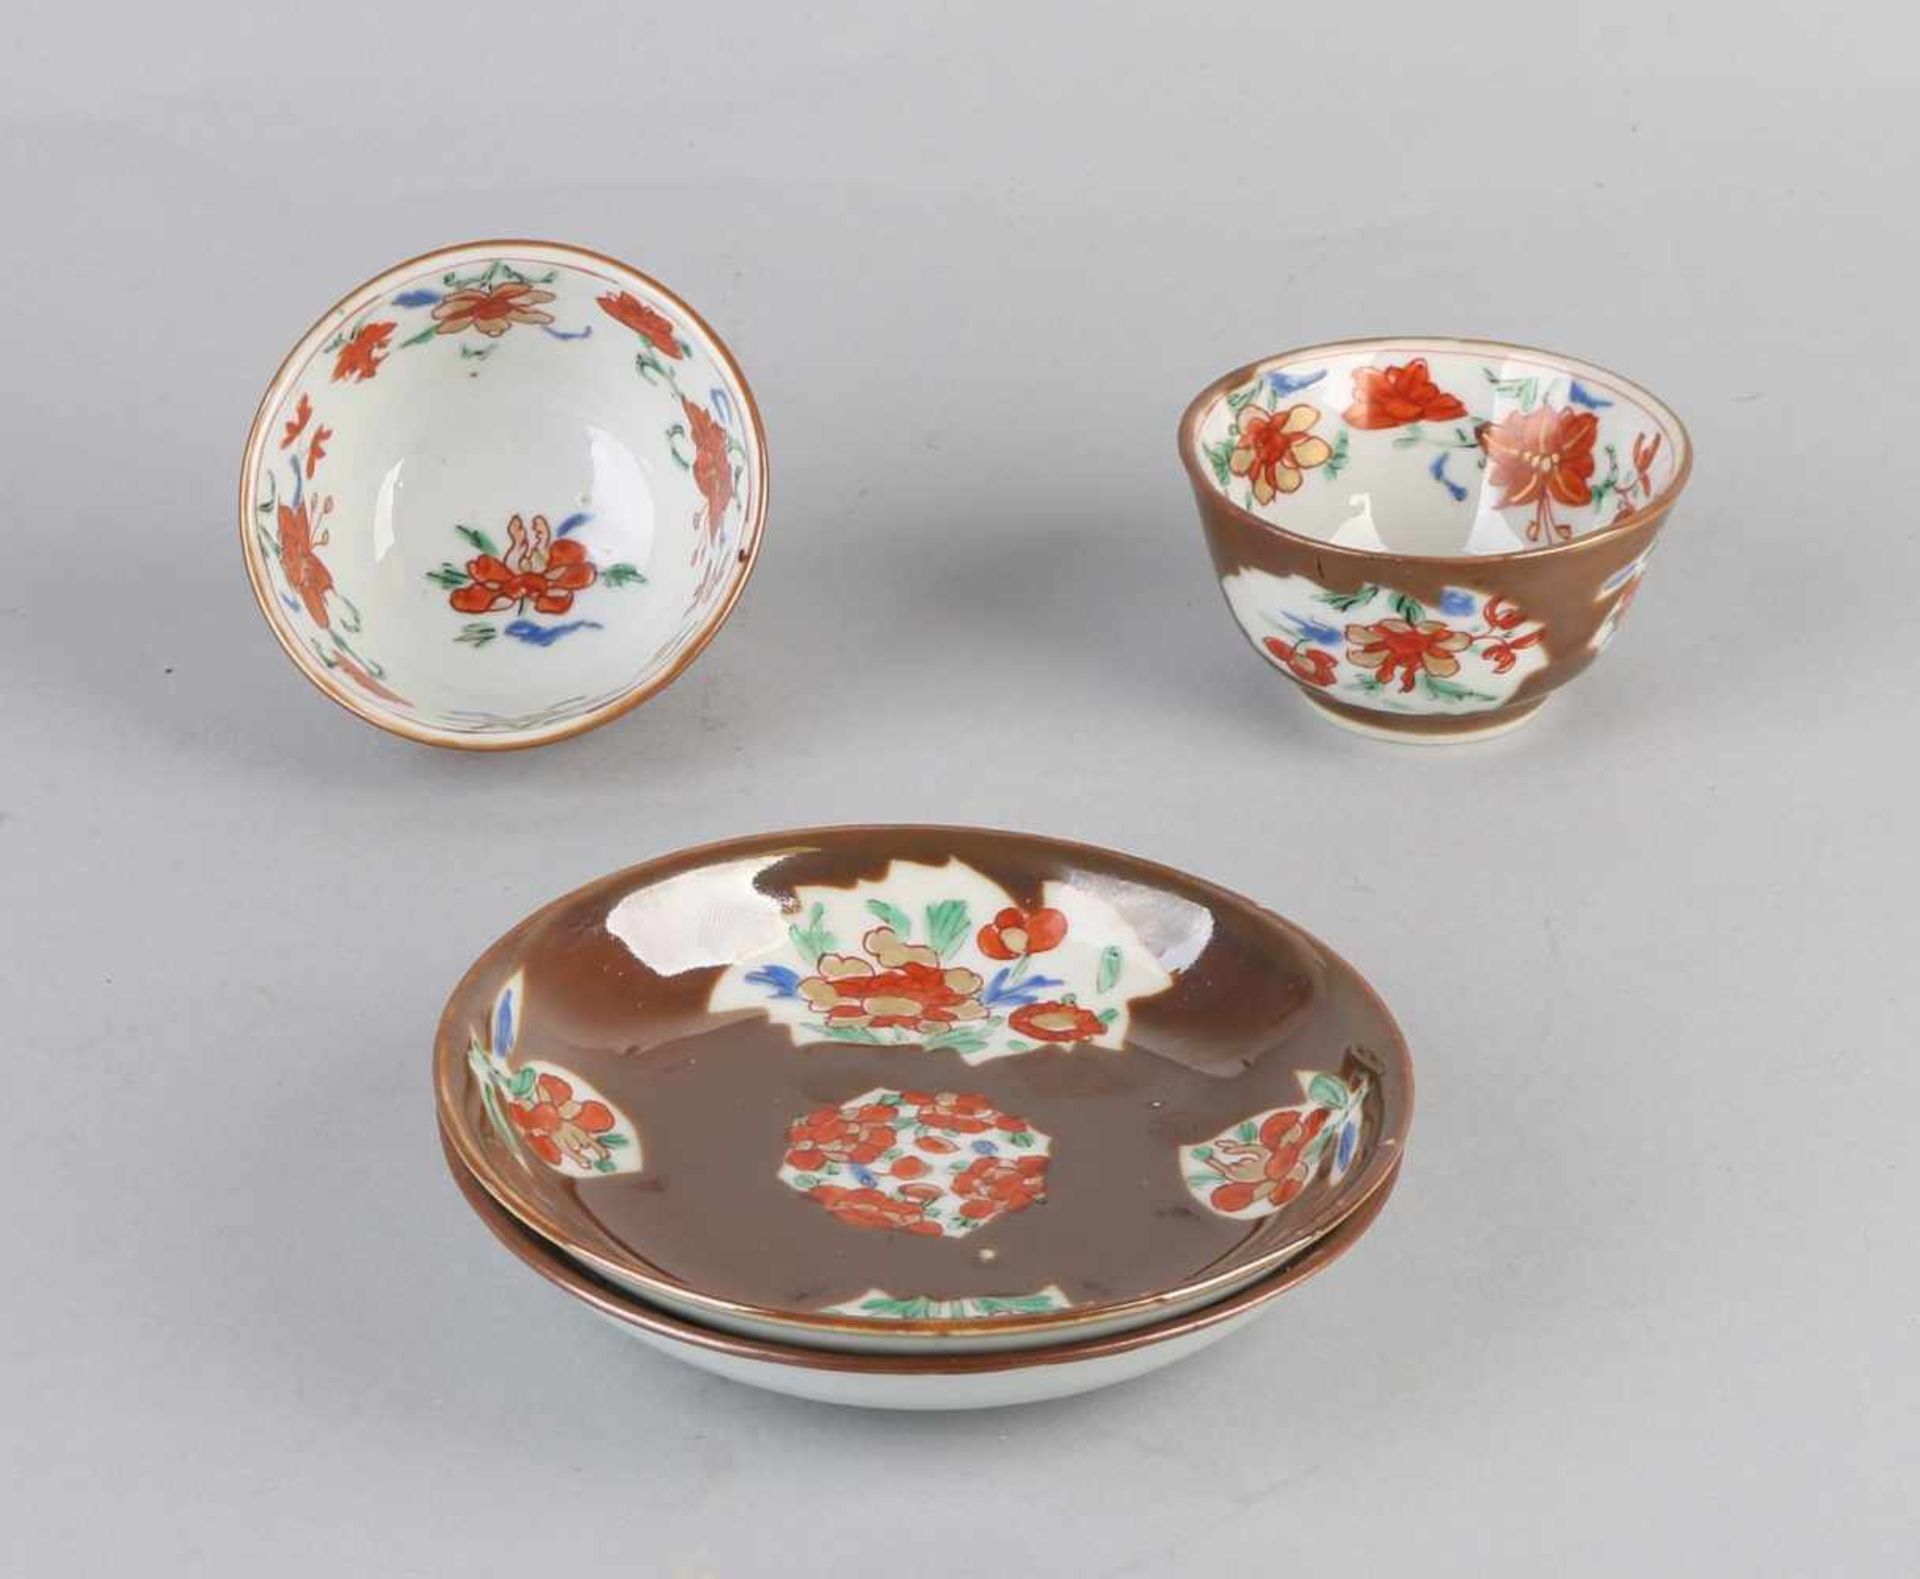 Zwei chinesische Porzellan Capucijn Tasse und Untertassen aus dem 19. Jahrhundert. Mit Blumen- /